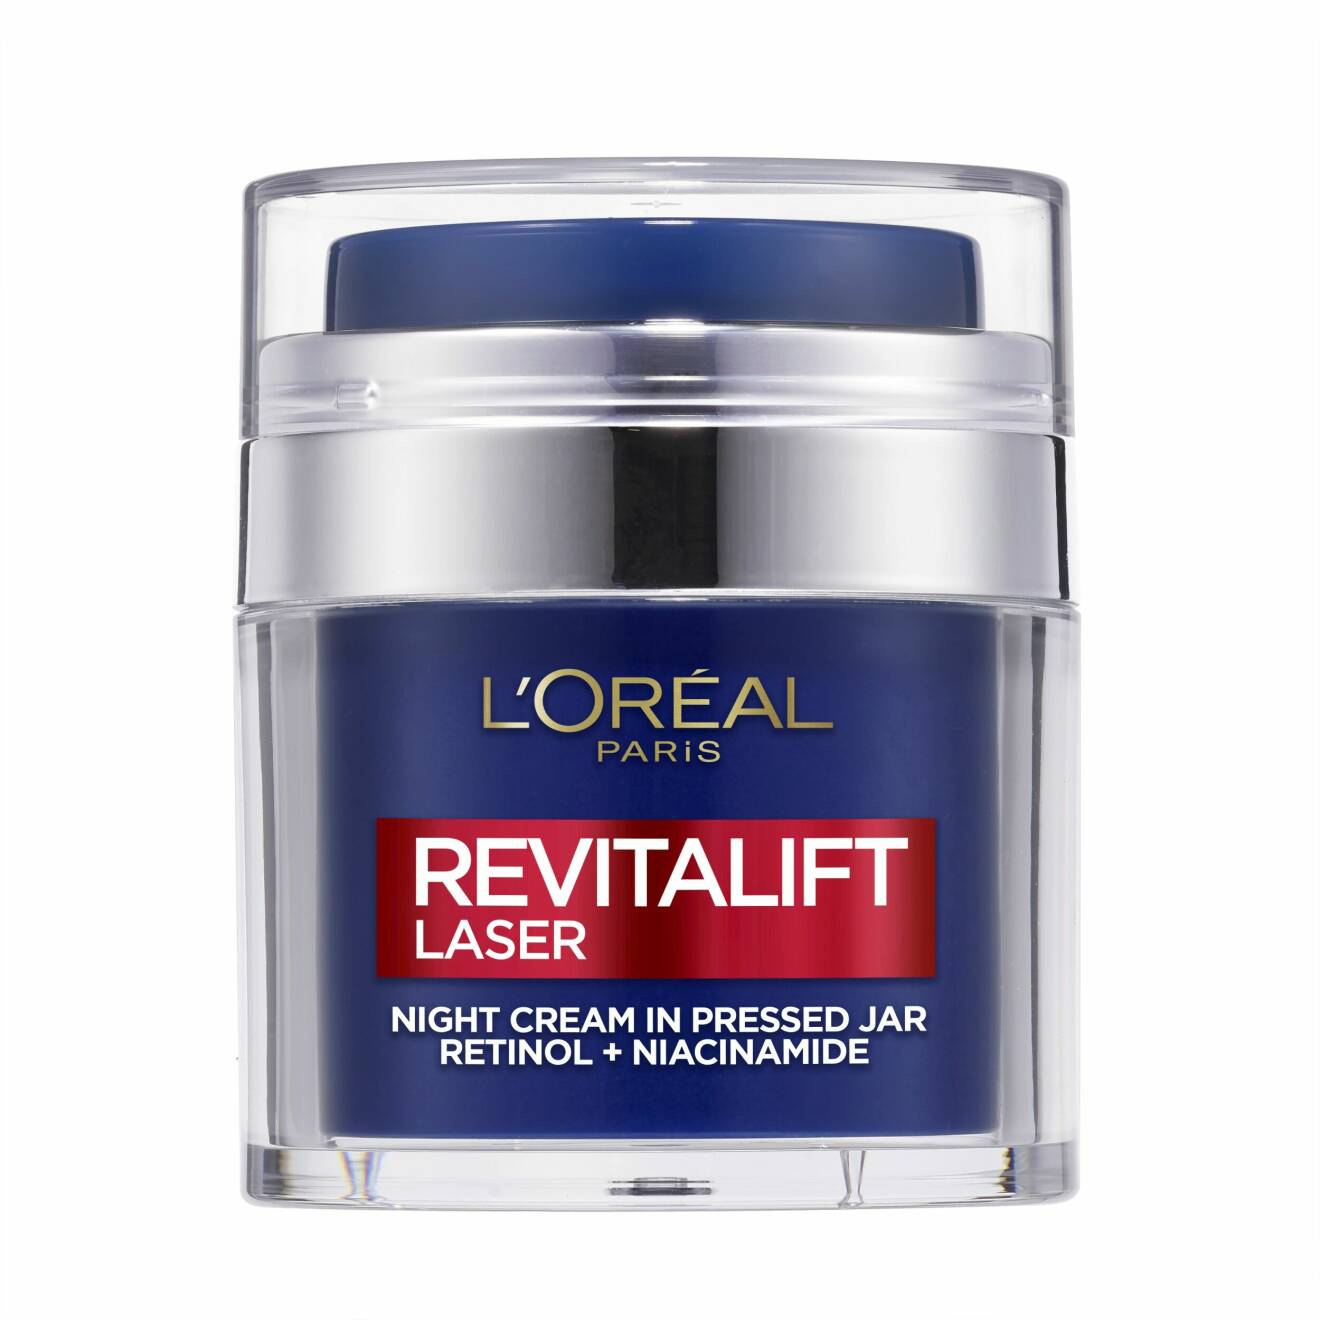 Revitalift Laser Night Cream in Pressed Jar från L’Oréal.